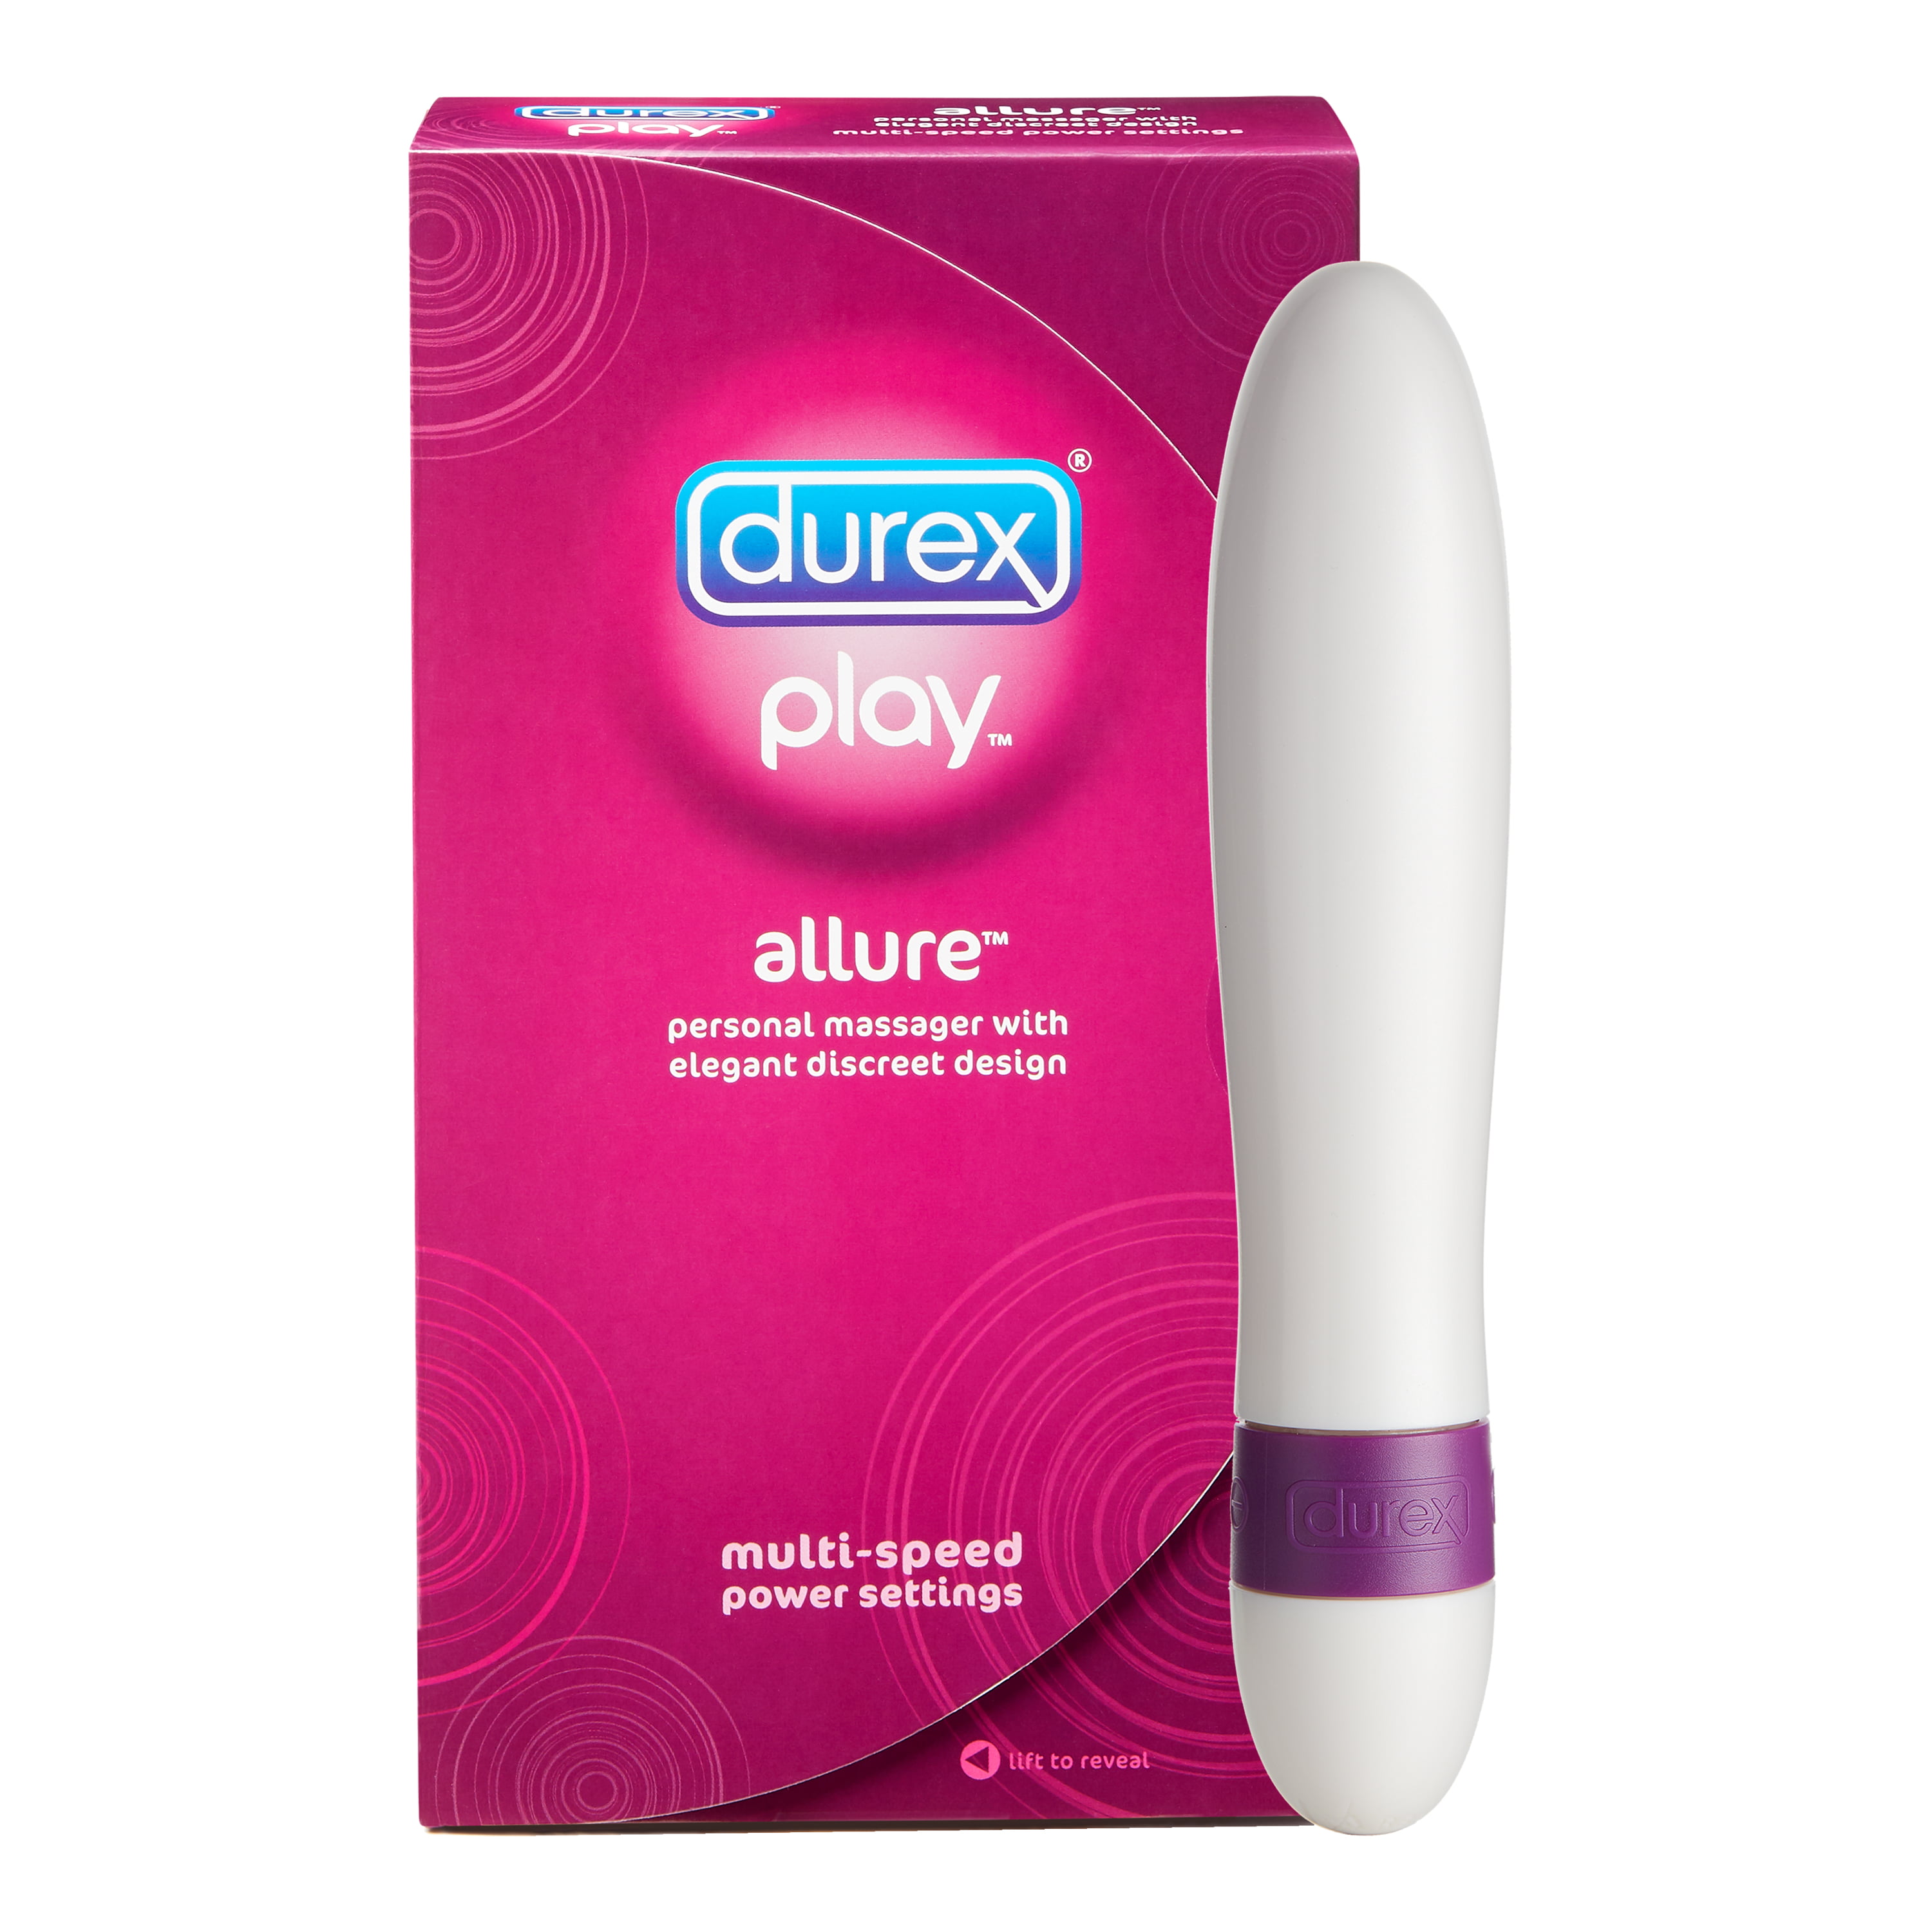 Durex Play Allure Vibrating Personal Massager Vibrator Walmart Com